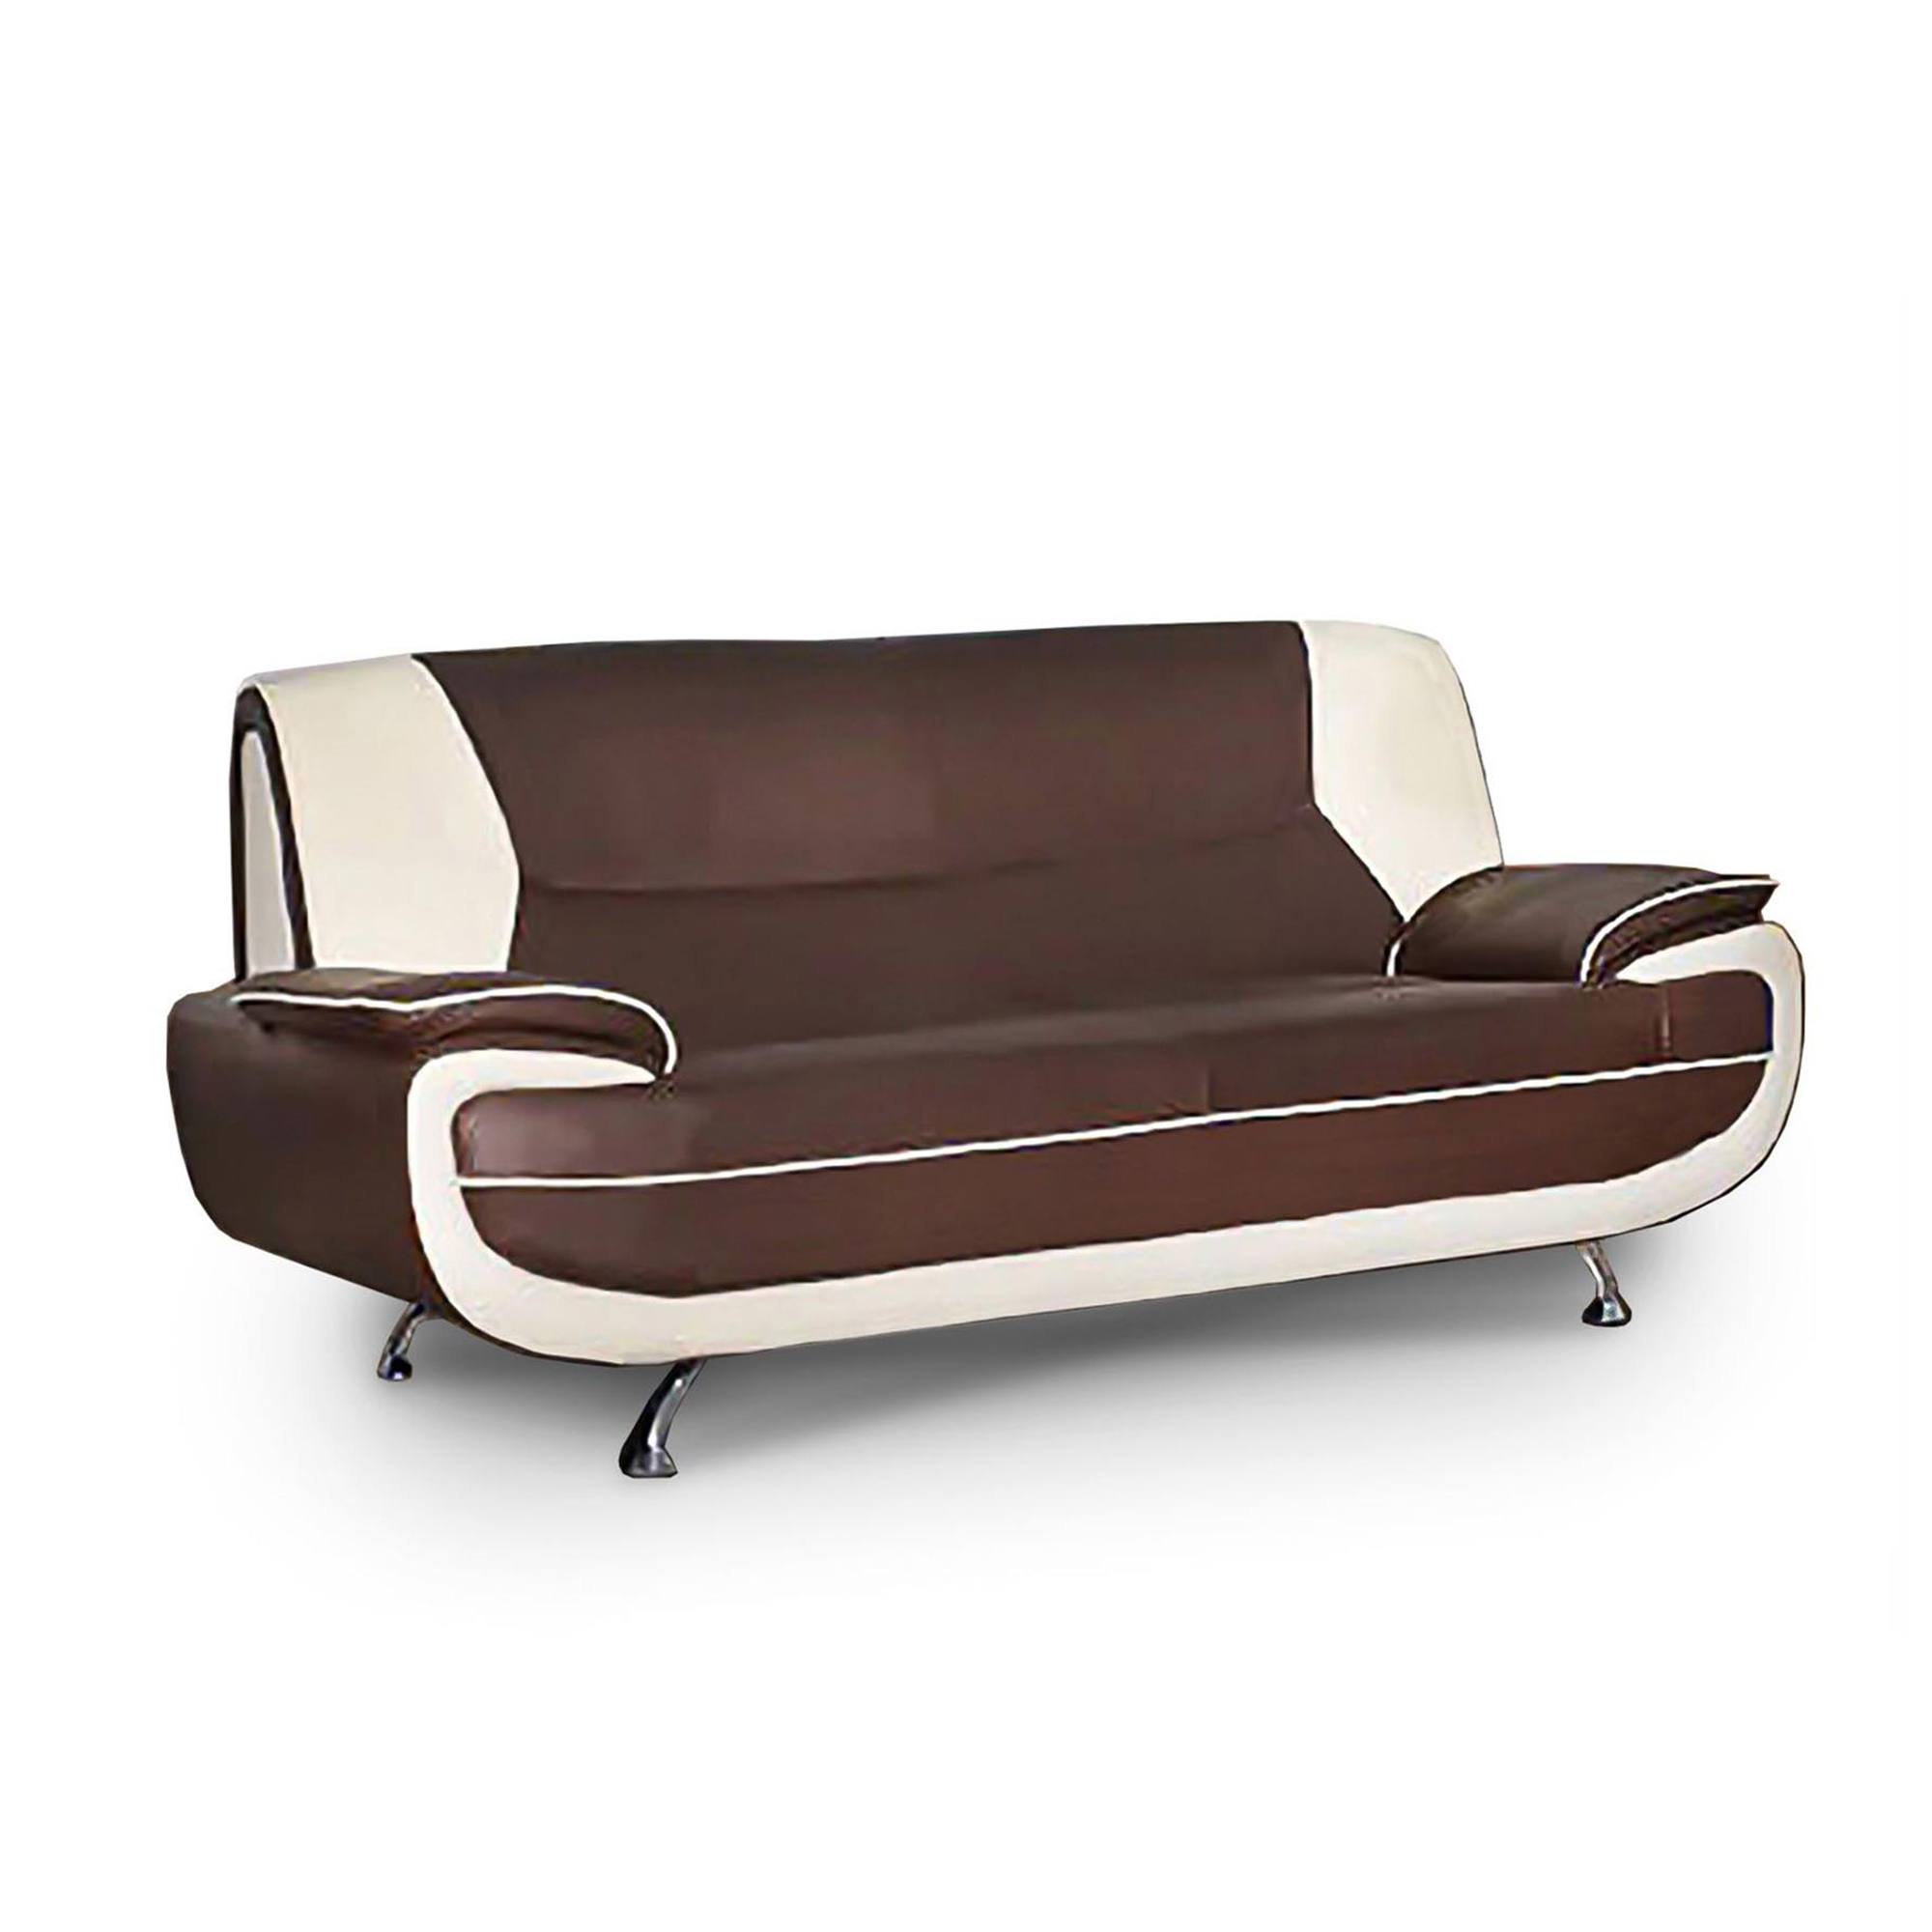 Canapé design 3 places en simili cuir marron et blanc